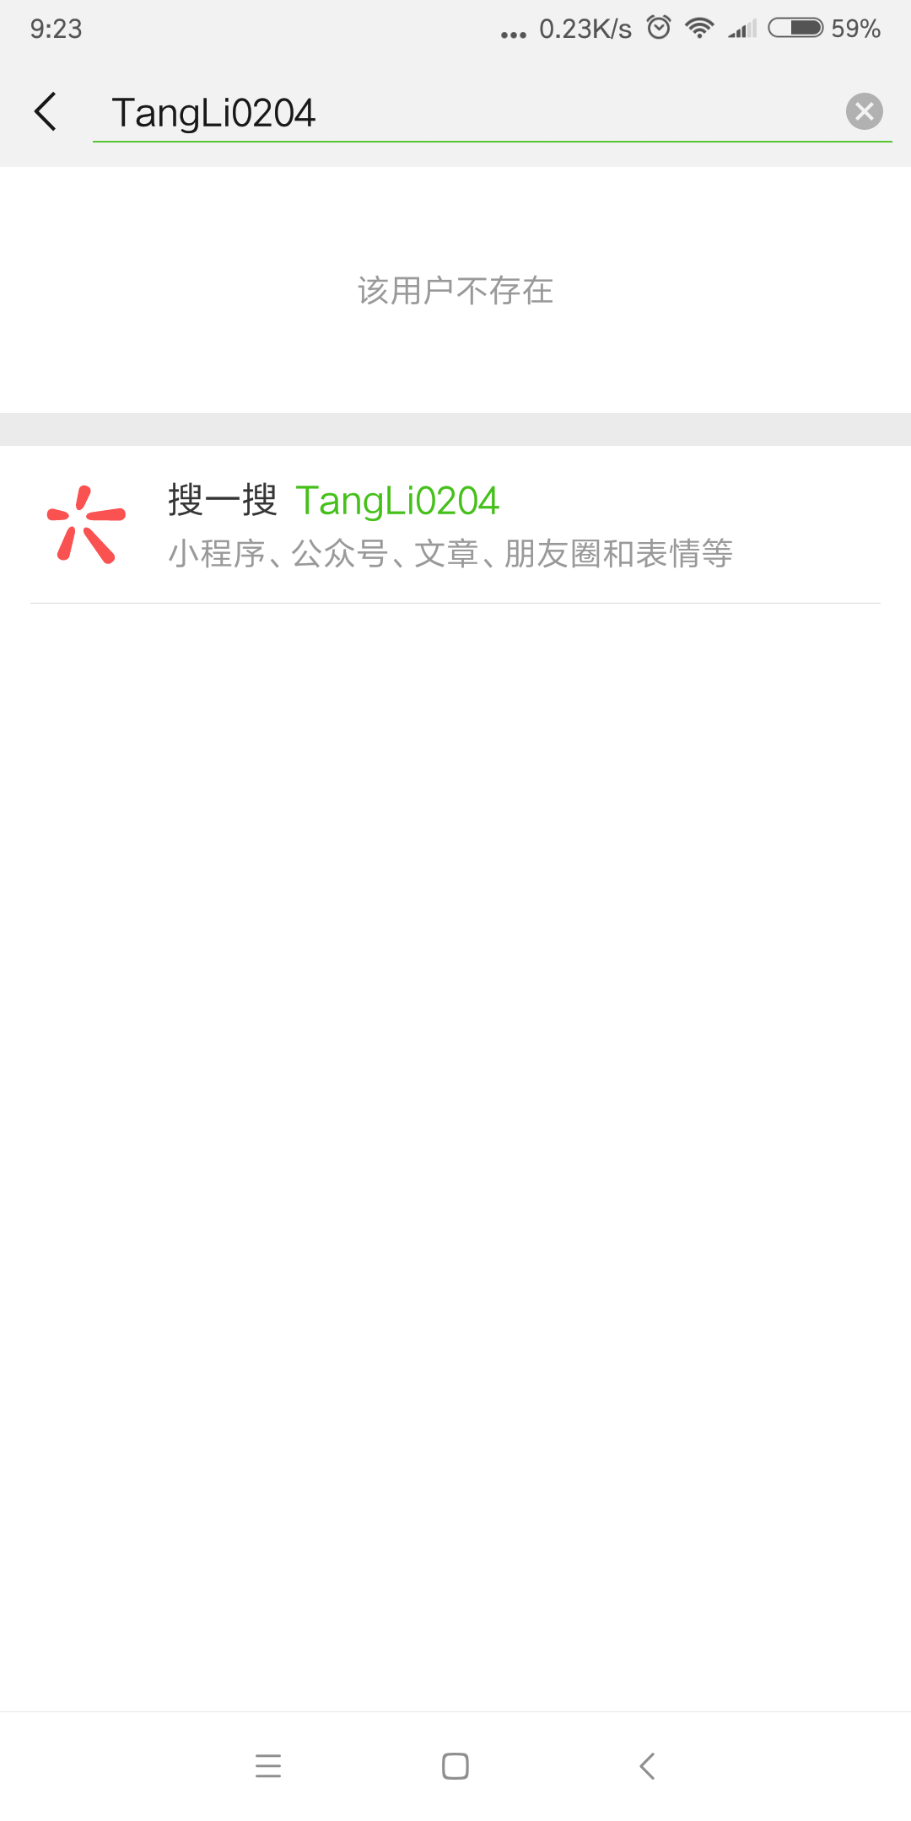 Screenshot_2018-06-26-09-23-37-007_com.tencent.mm.png